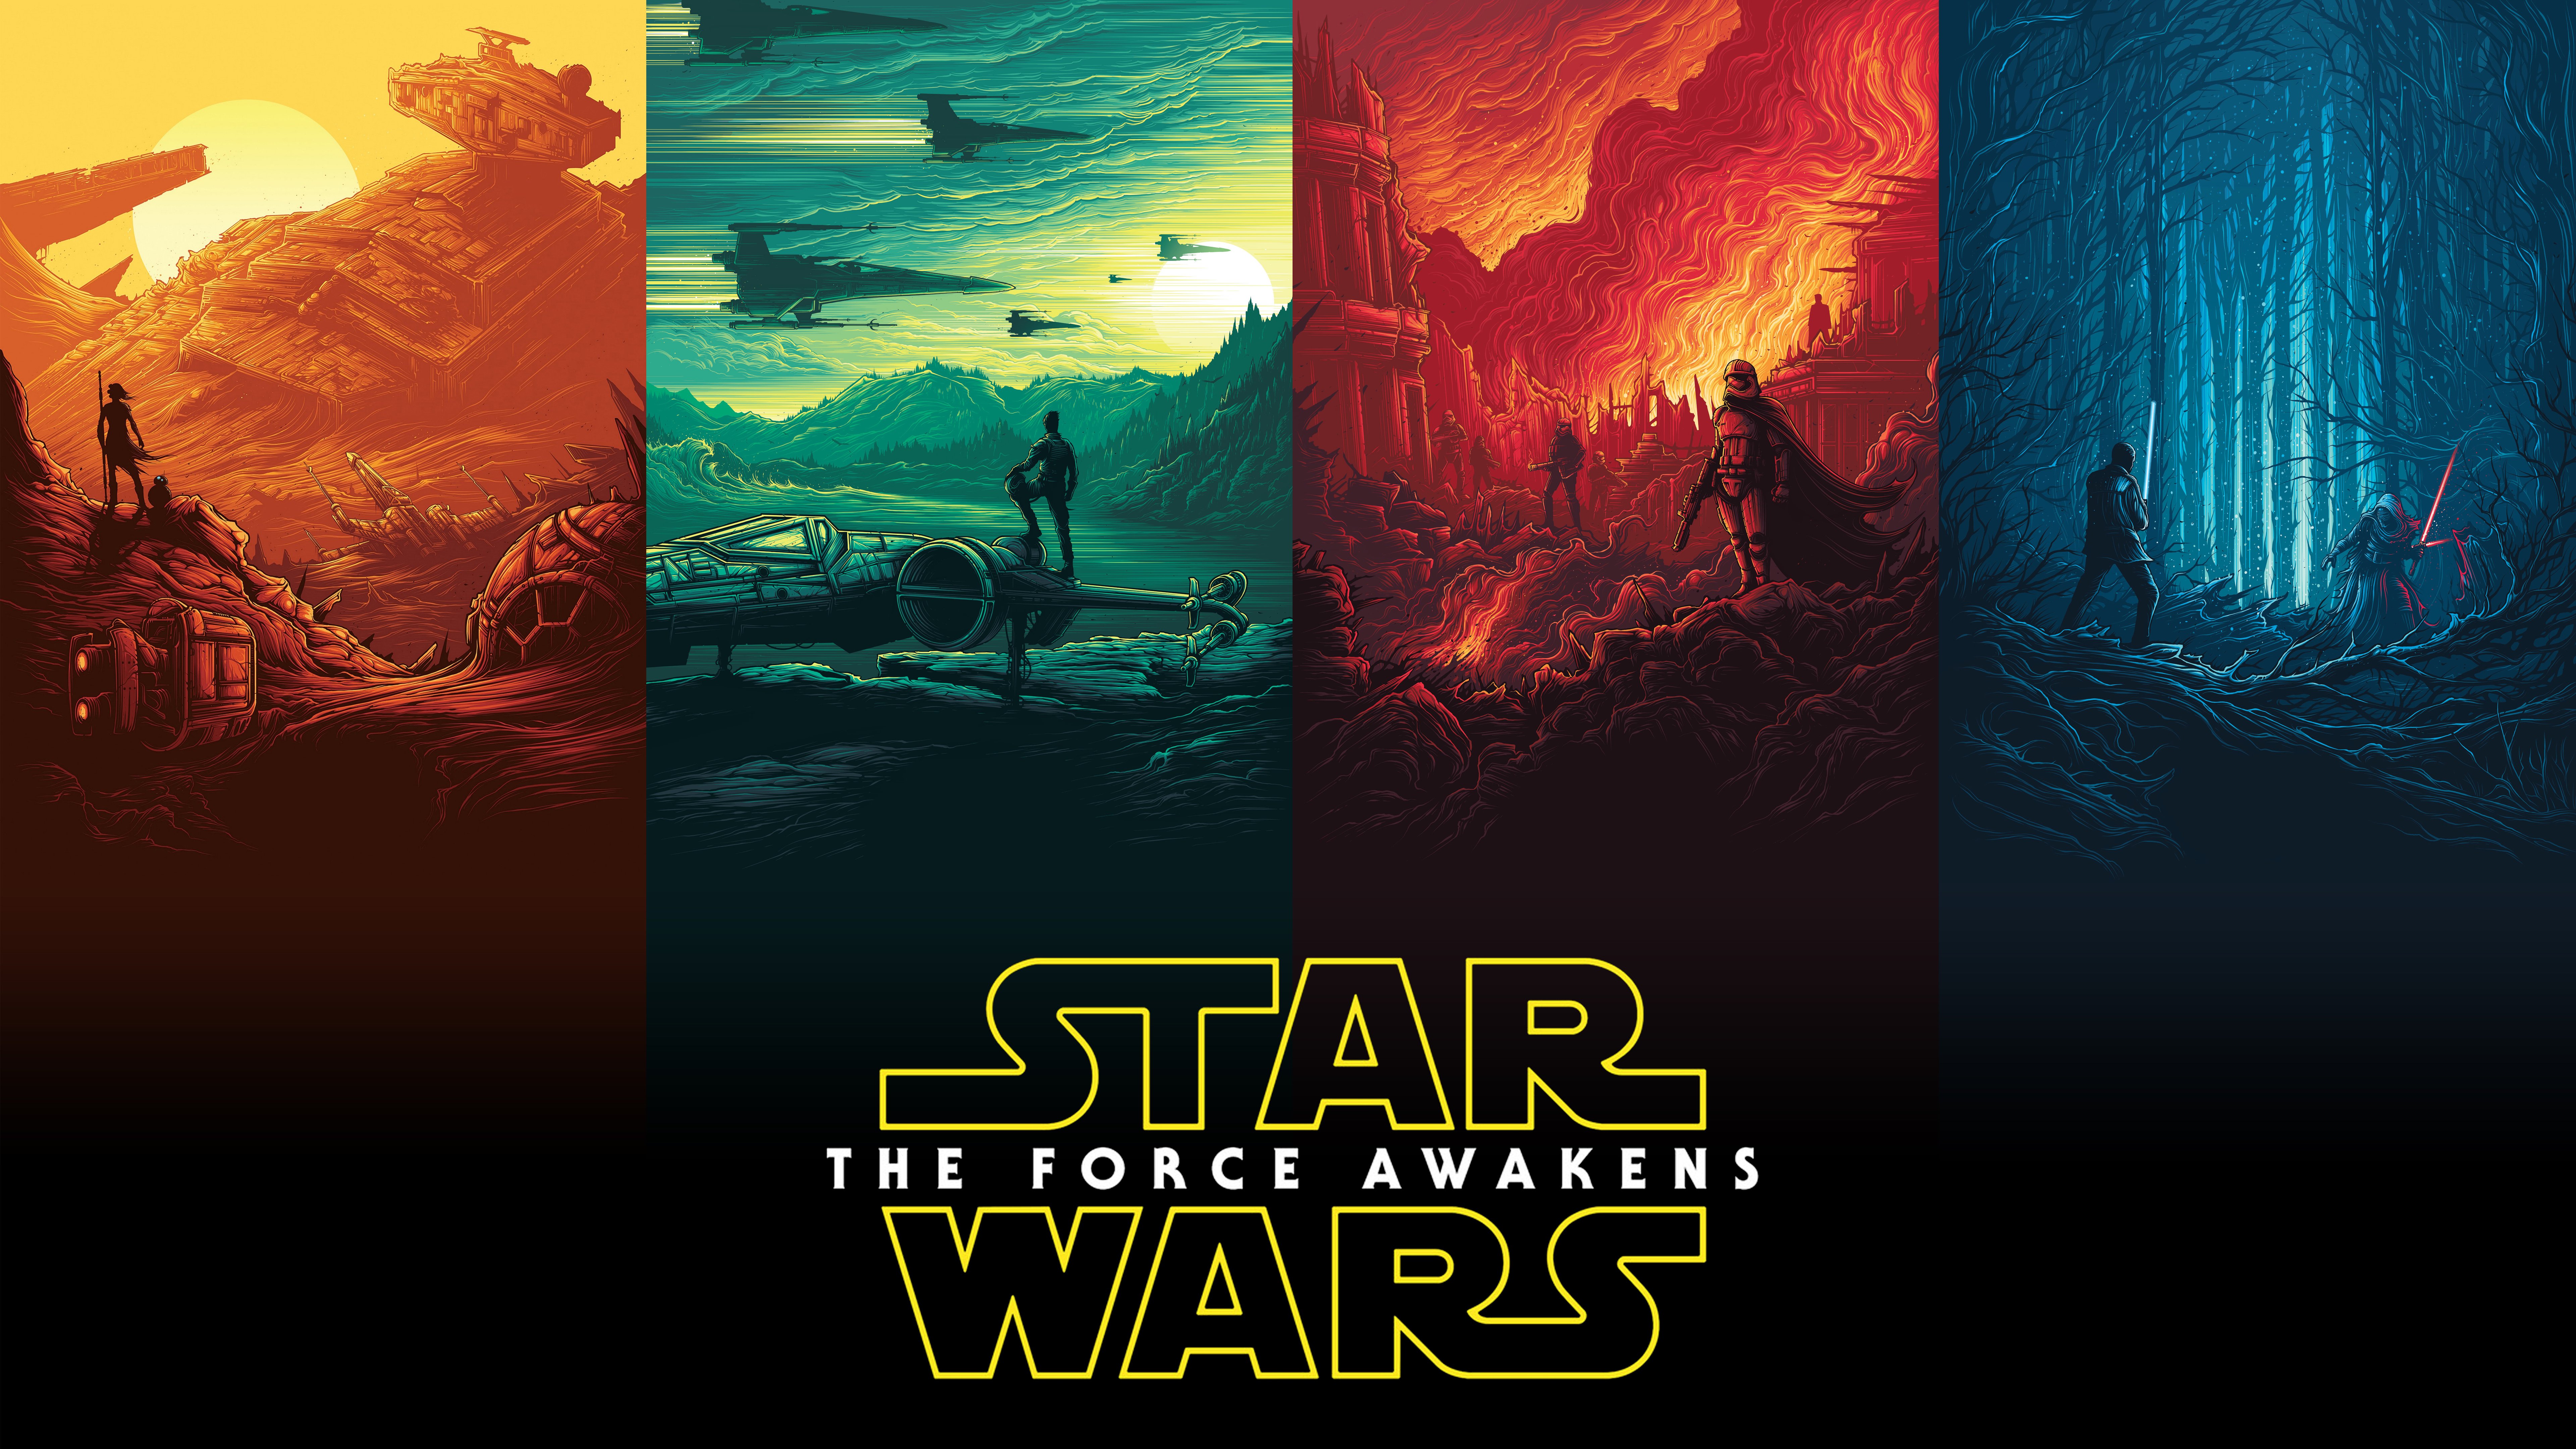 Tổng hợp 888 Star Wars desktop backgrounds với các nhân vật và khung cảnh đầy kịch tính từ Star Wars